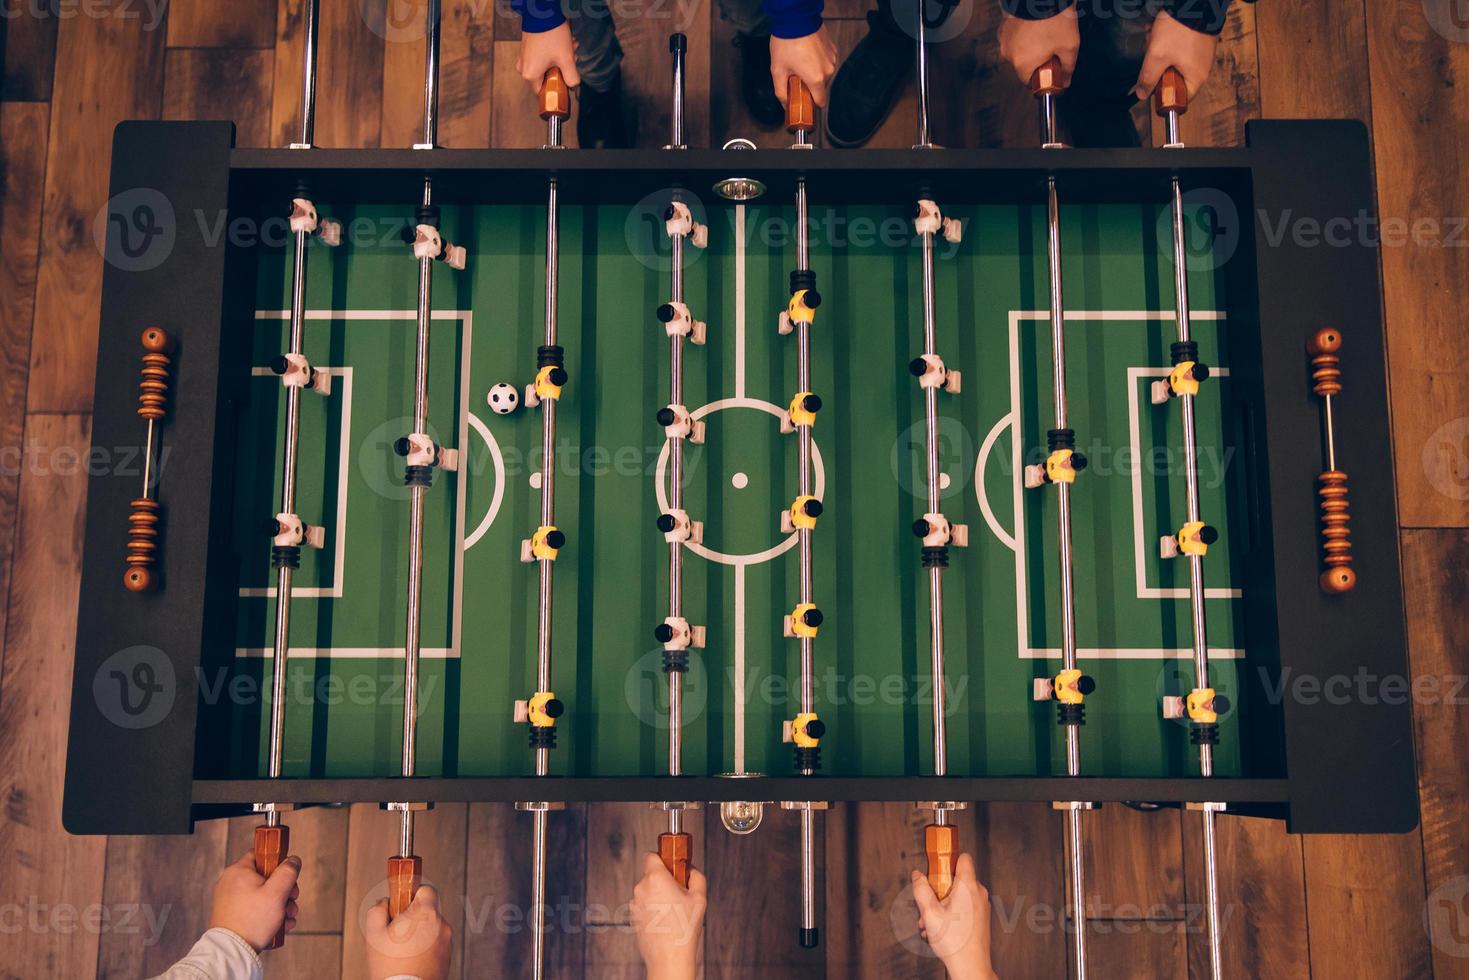 juego de futbolín vista superior de la mesa de futbolín en el piso de madera foto